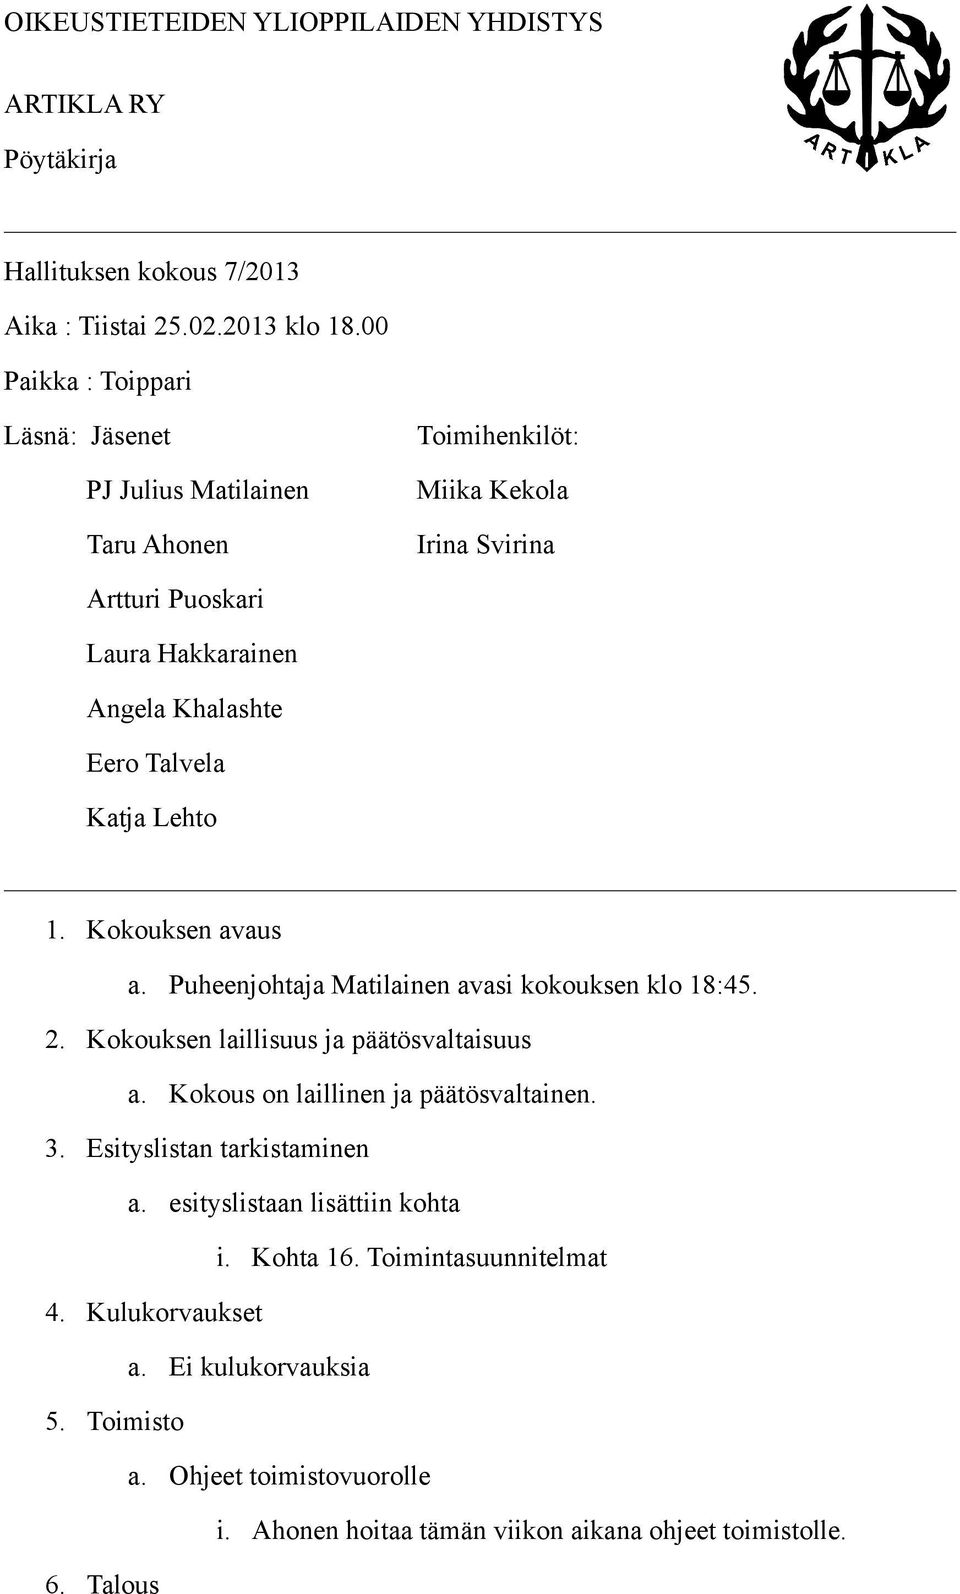 Katja Lehto 1. Kokouksen avaus a. Puheenjohtaja Matilainen avasi kokouksen klo 18:45. 2. Kokouksen laillisuus ja päätösvaltaisuus a. Kokous on laillinen ja päätösvaltainen. 3.